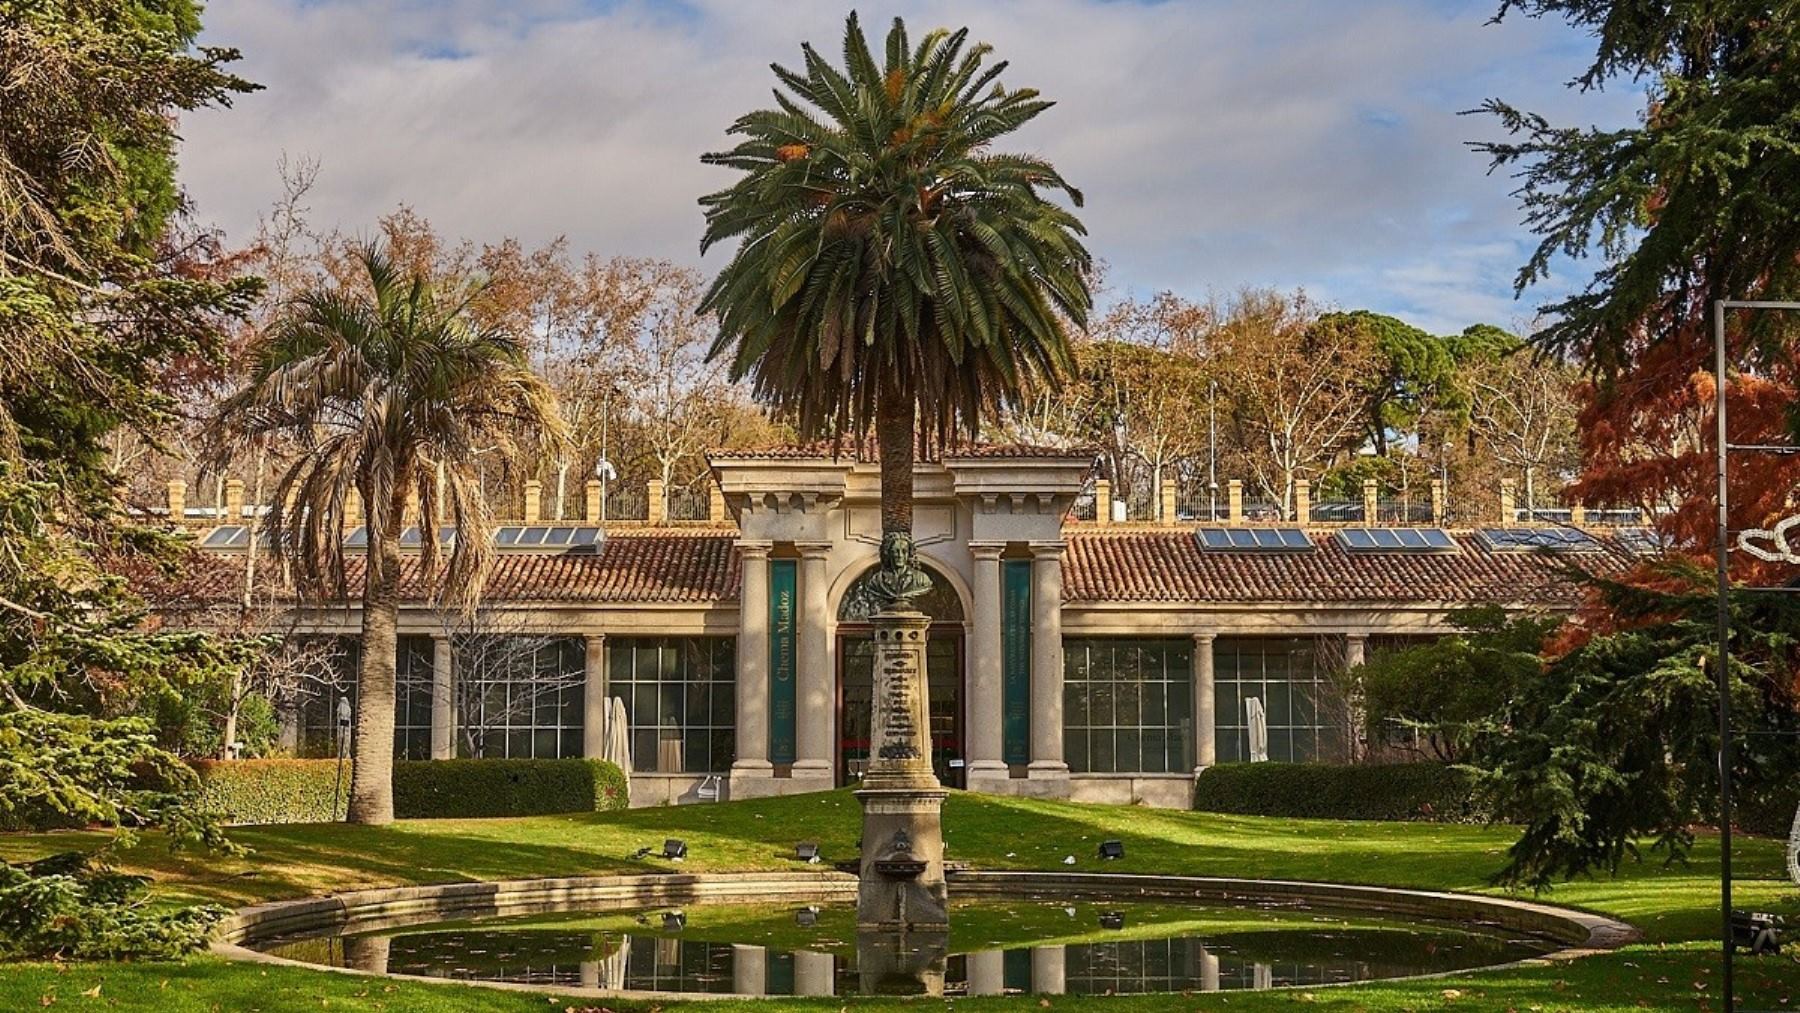 ¿Qué son las marcas de balas que hay en las rejas del Real Jardín Botánico de Madrid?